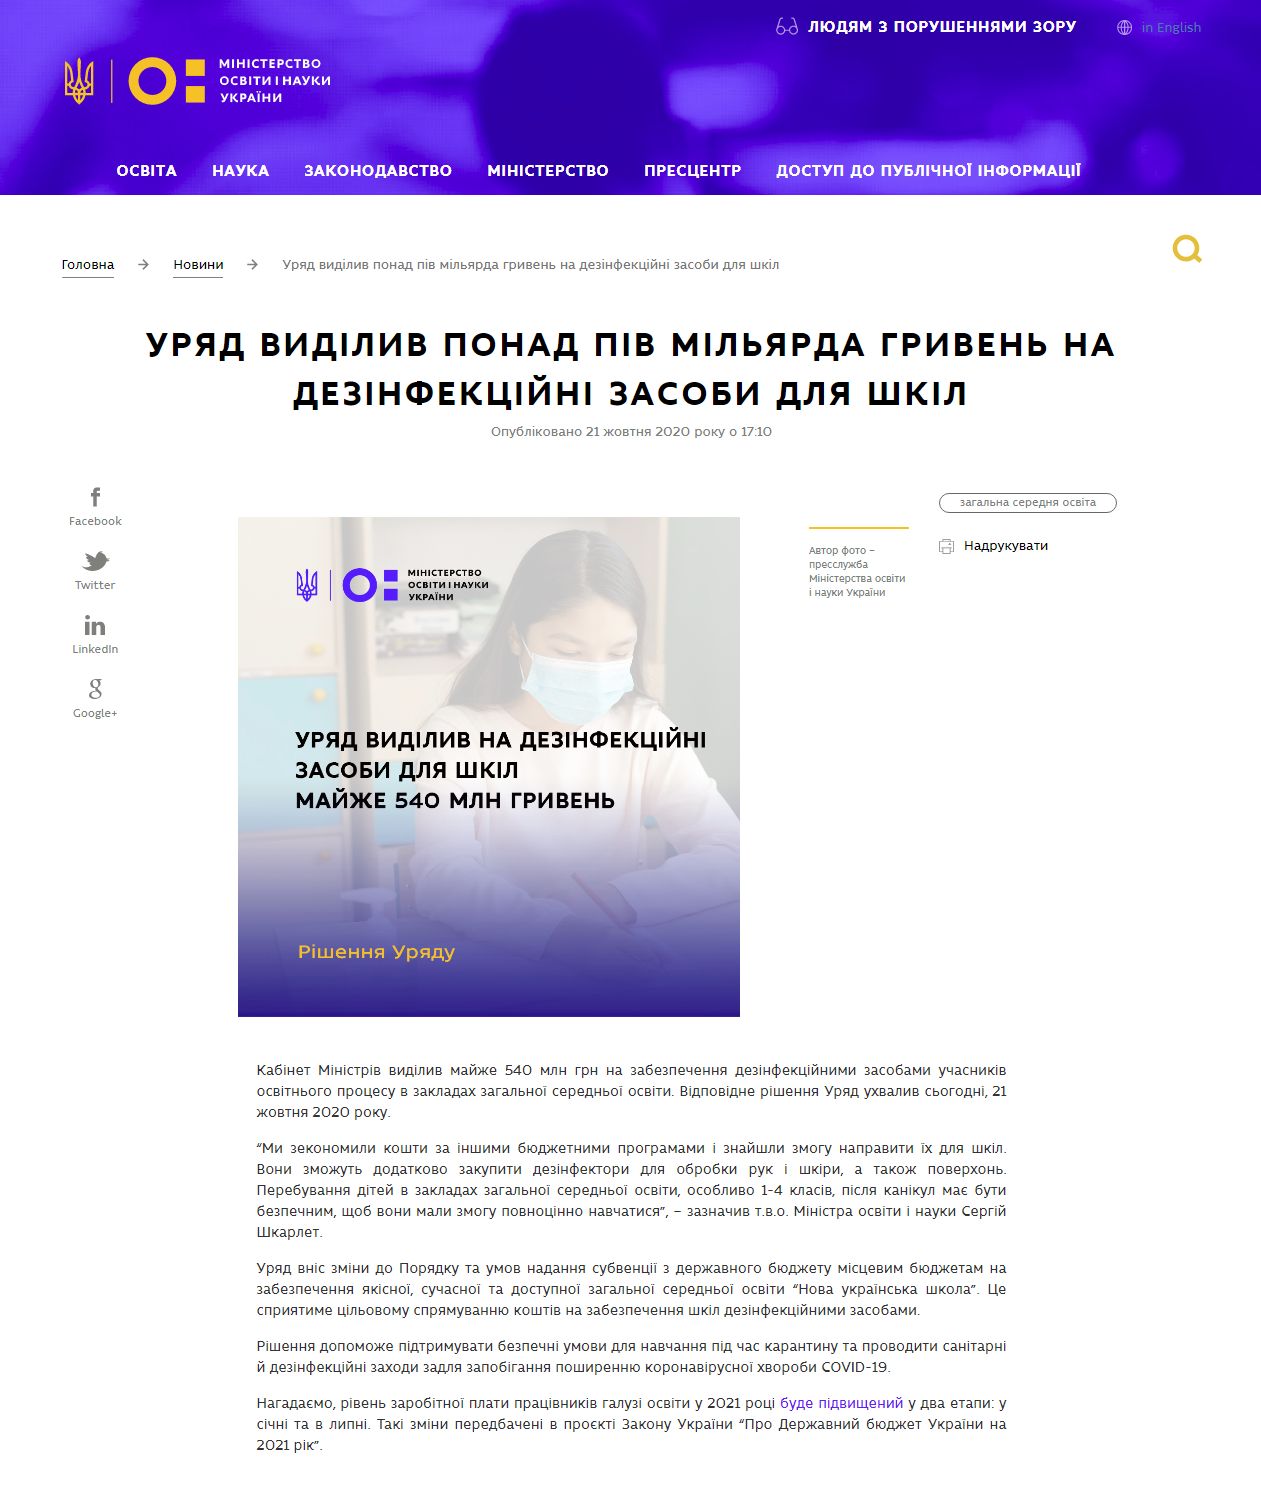 https://mon.gov.ua/ua/news/uryad-vidiliv-ponad-piv-milyarda-griven-na-dezinfekcijni-zasobi-dlya-shkil